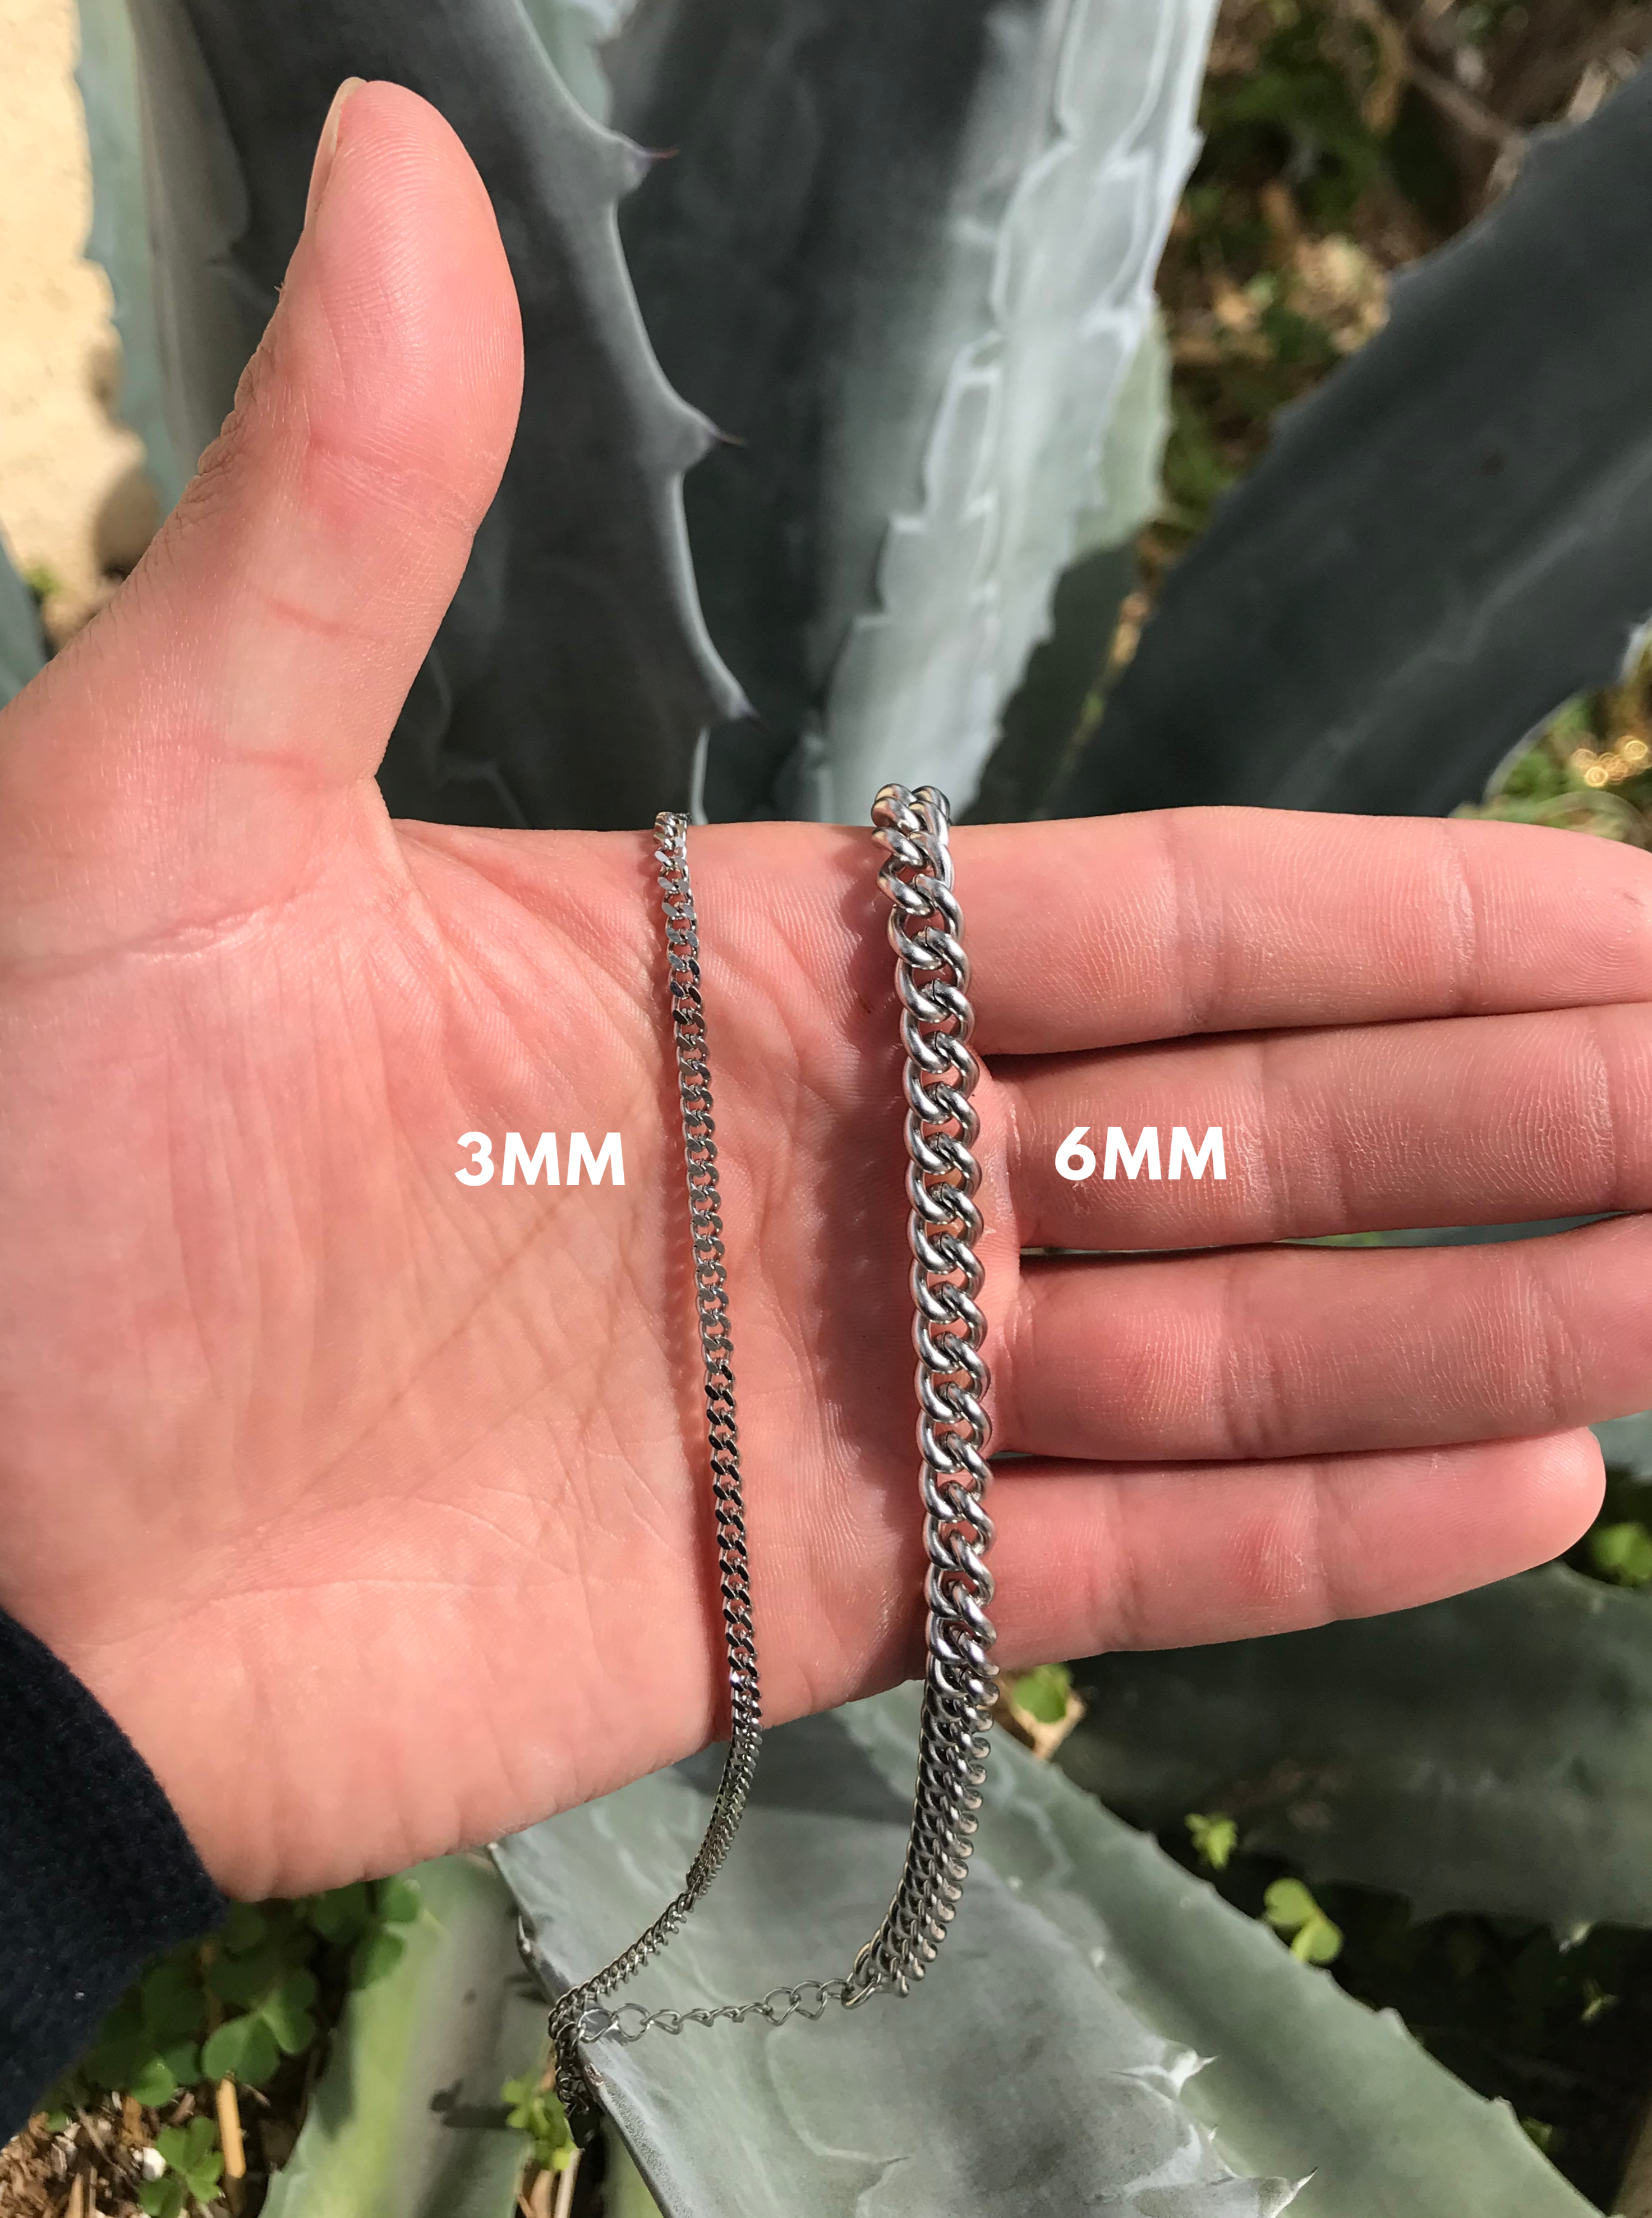 Mens Silver Chain Size Comparison - 3mm vs 5mm